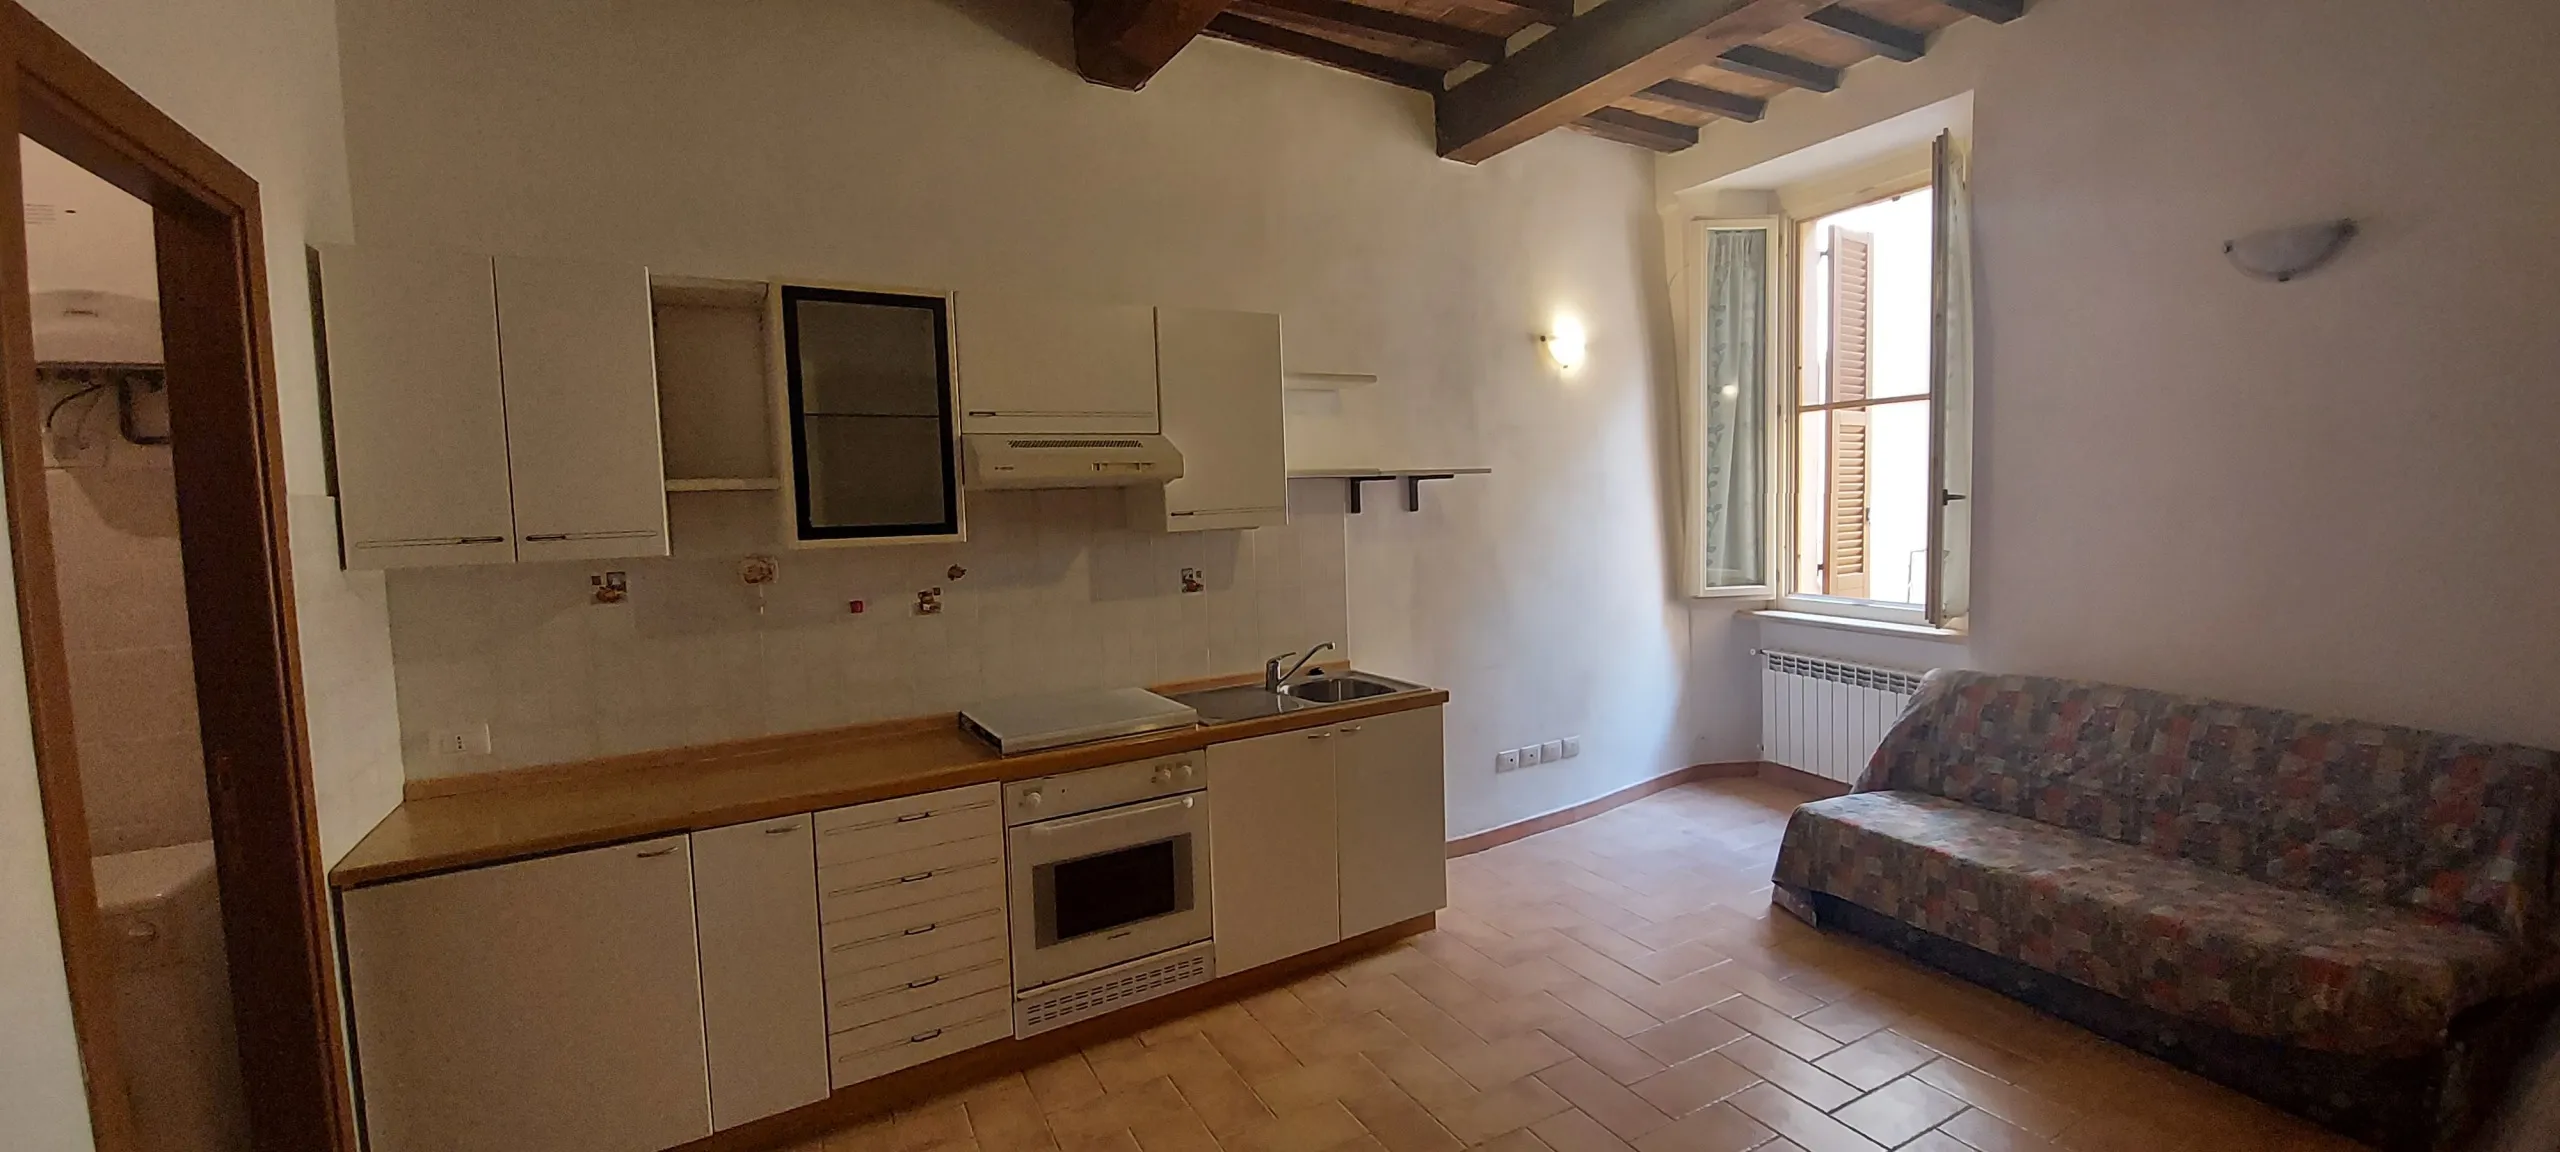 Immagine per Appartamento in vendita a Massa Martana piazza Giordano Bruno 5